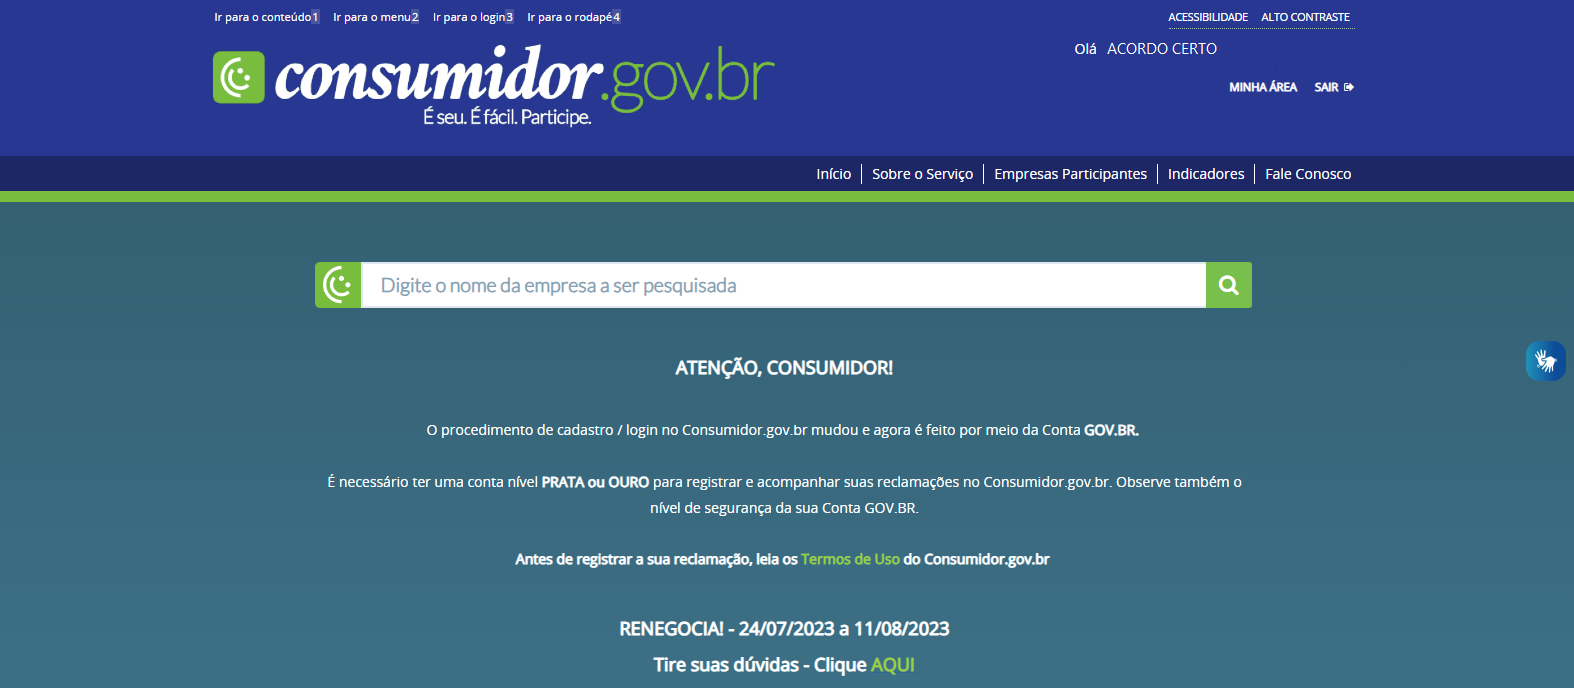 Programa Renegocia - Entenda como participar do Mutirão Renegocia pelo site consumidor.gov.br